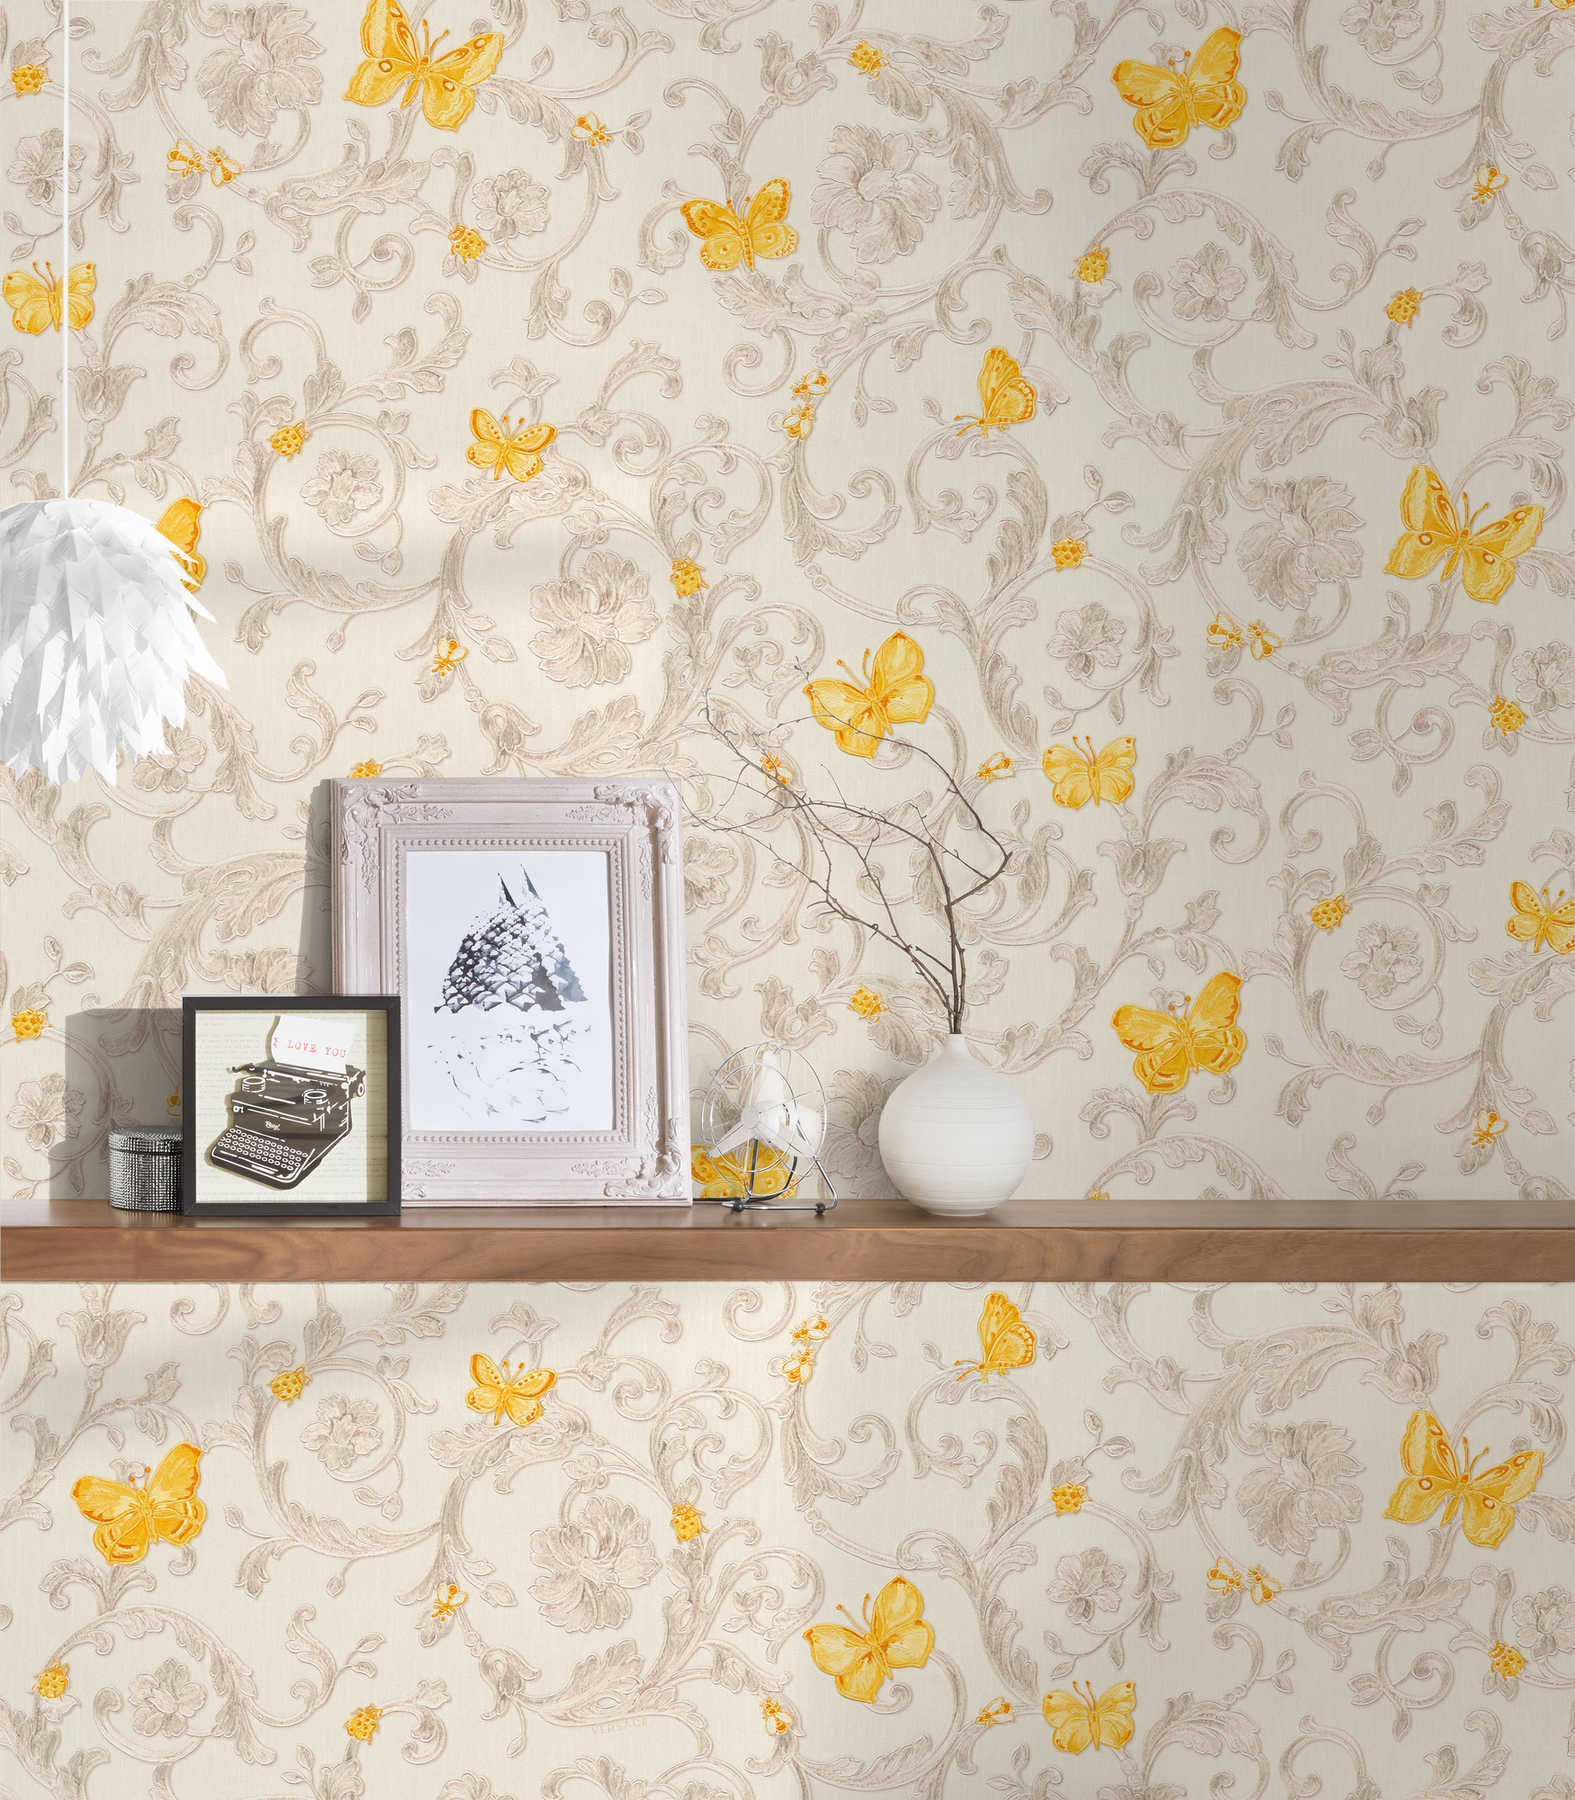             Papier peint VERSACE avec papillons & ornements - crème, or
        